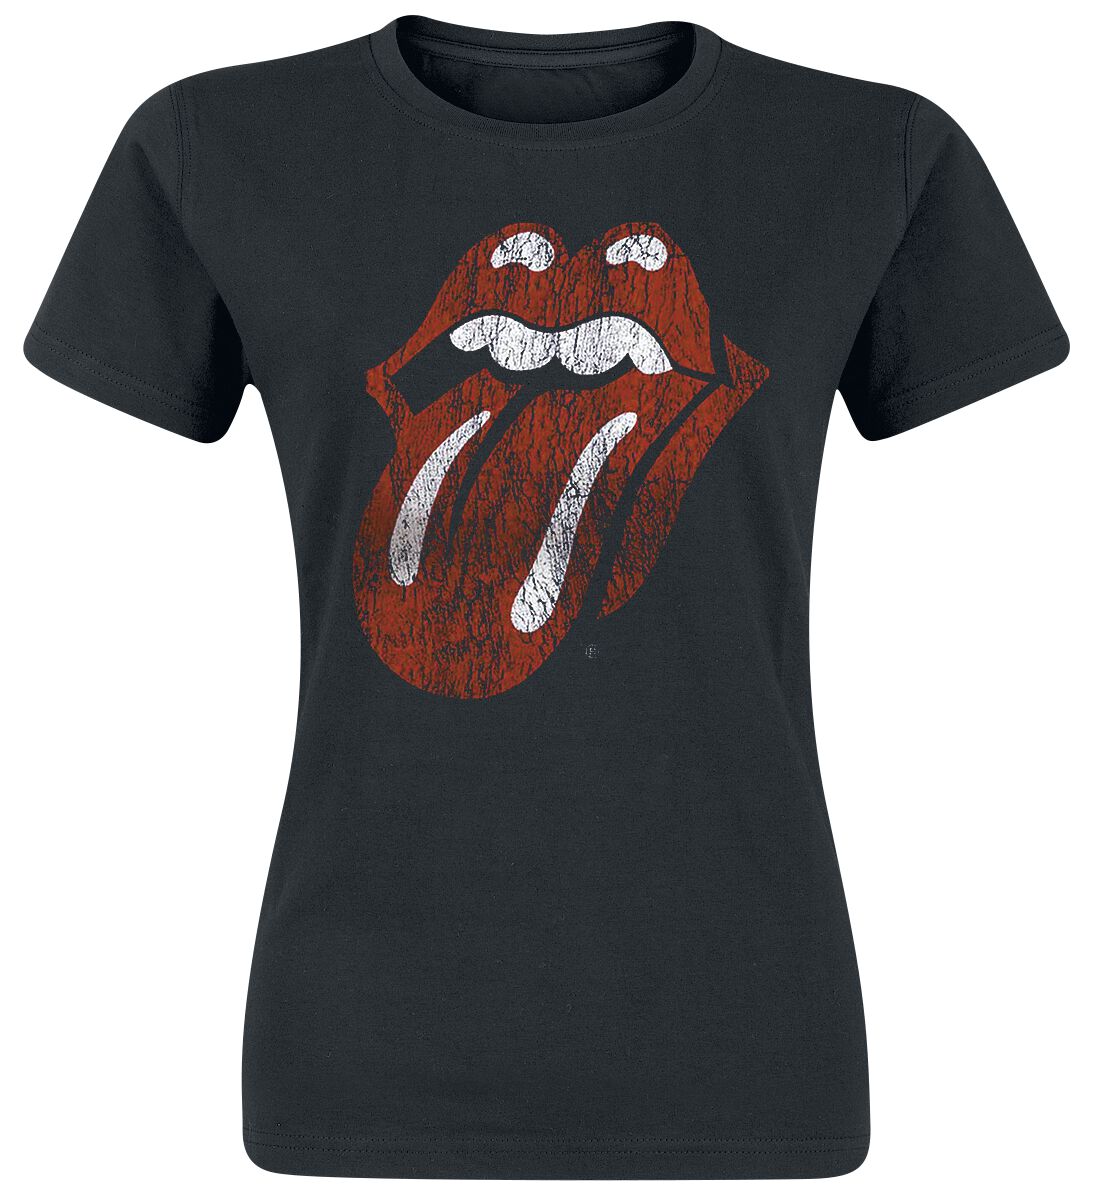 T-Shirt Manches courtes de The Rolling Stones - Langue Classique - S à XXL - pour Femme - noir